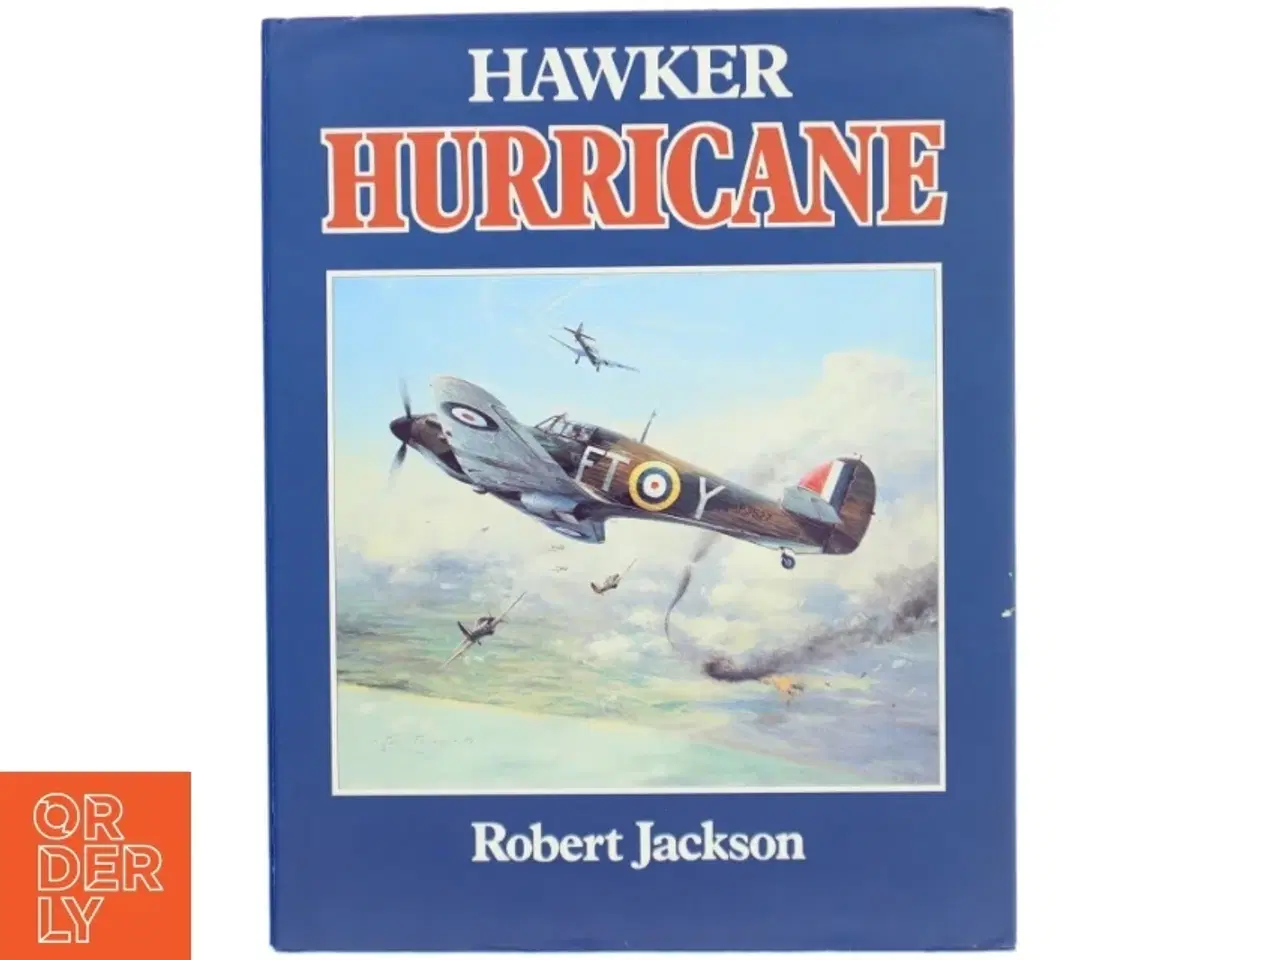 Billede 1 - Hawker Hurricane bog af Robert Jackson